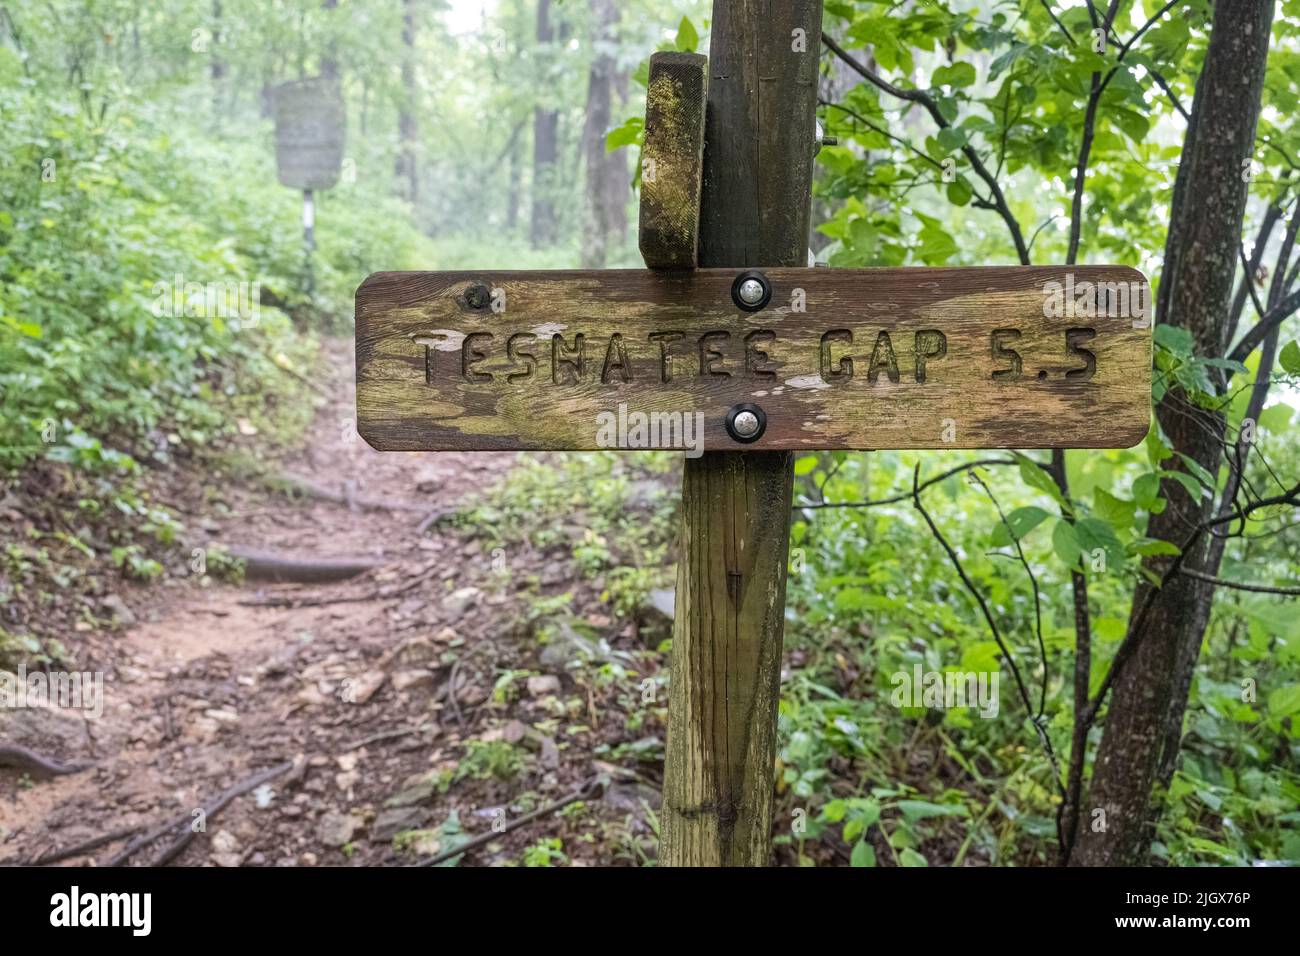 Señal de Trail hacia Tesnatee Gap en Neels Gap en el Appalachian Trail en el Raven Cliffs Wilderness en las Montañas Blue Ridge en el noreste de Georgia. (ESTADOS UNIDOS) Foto de stock